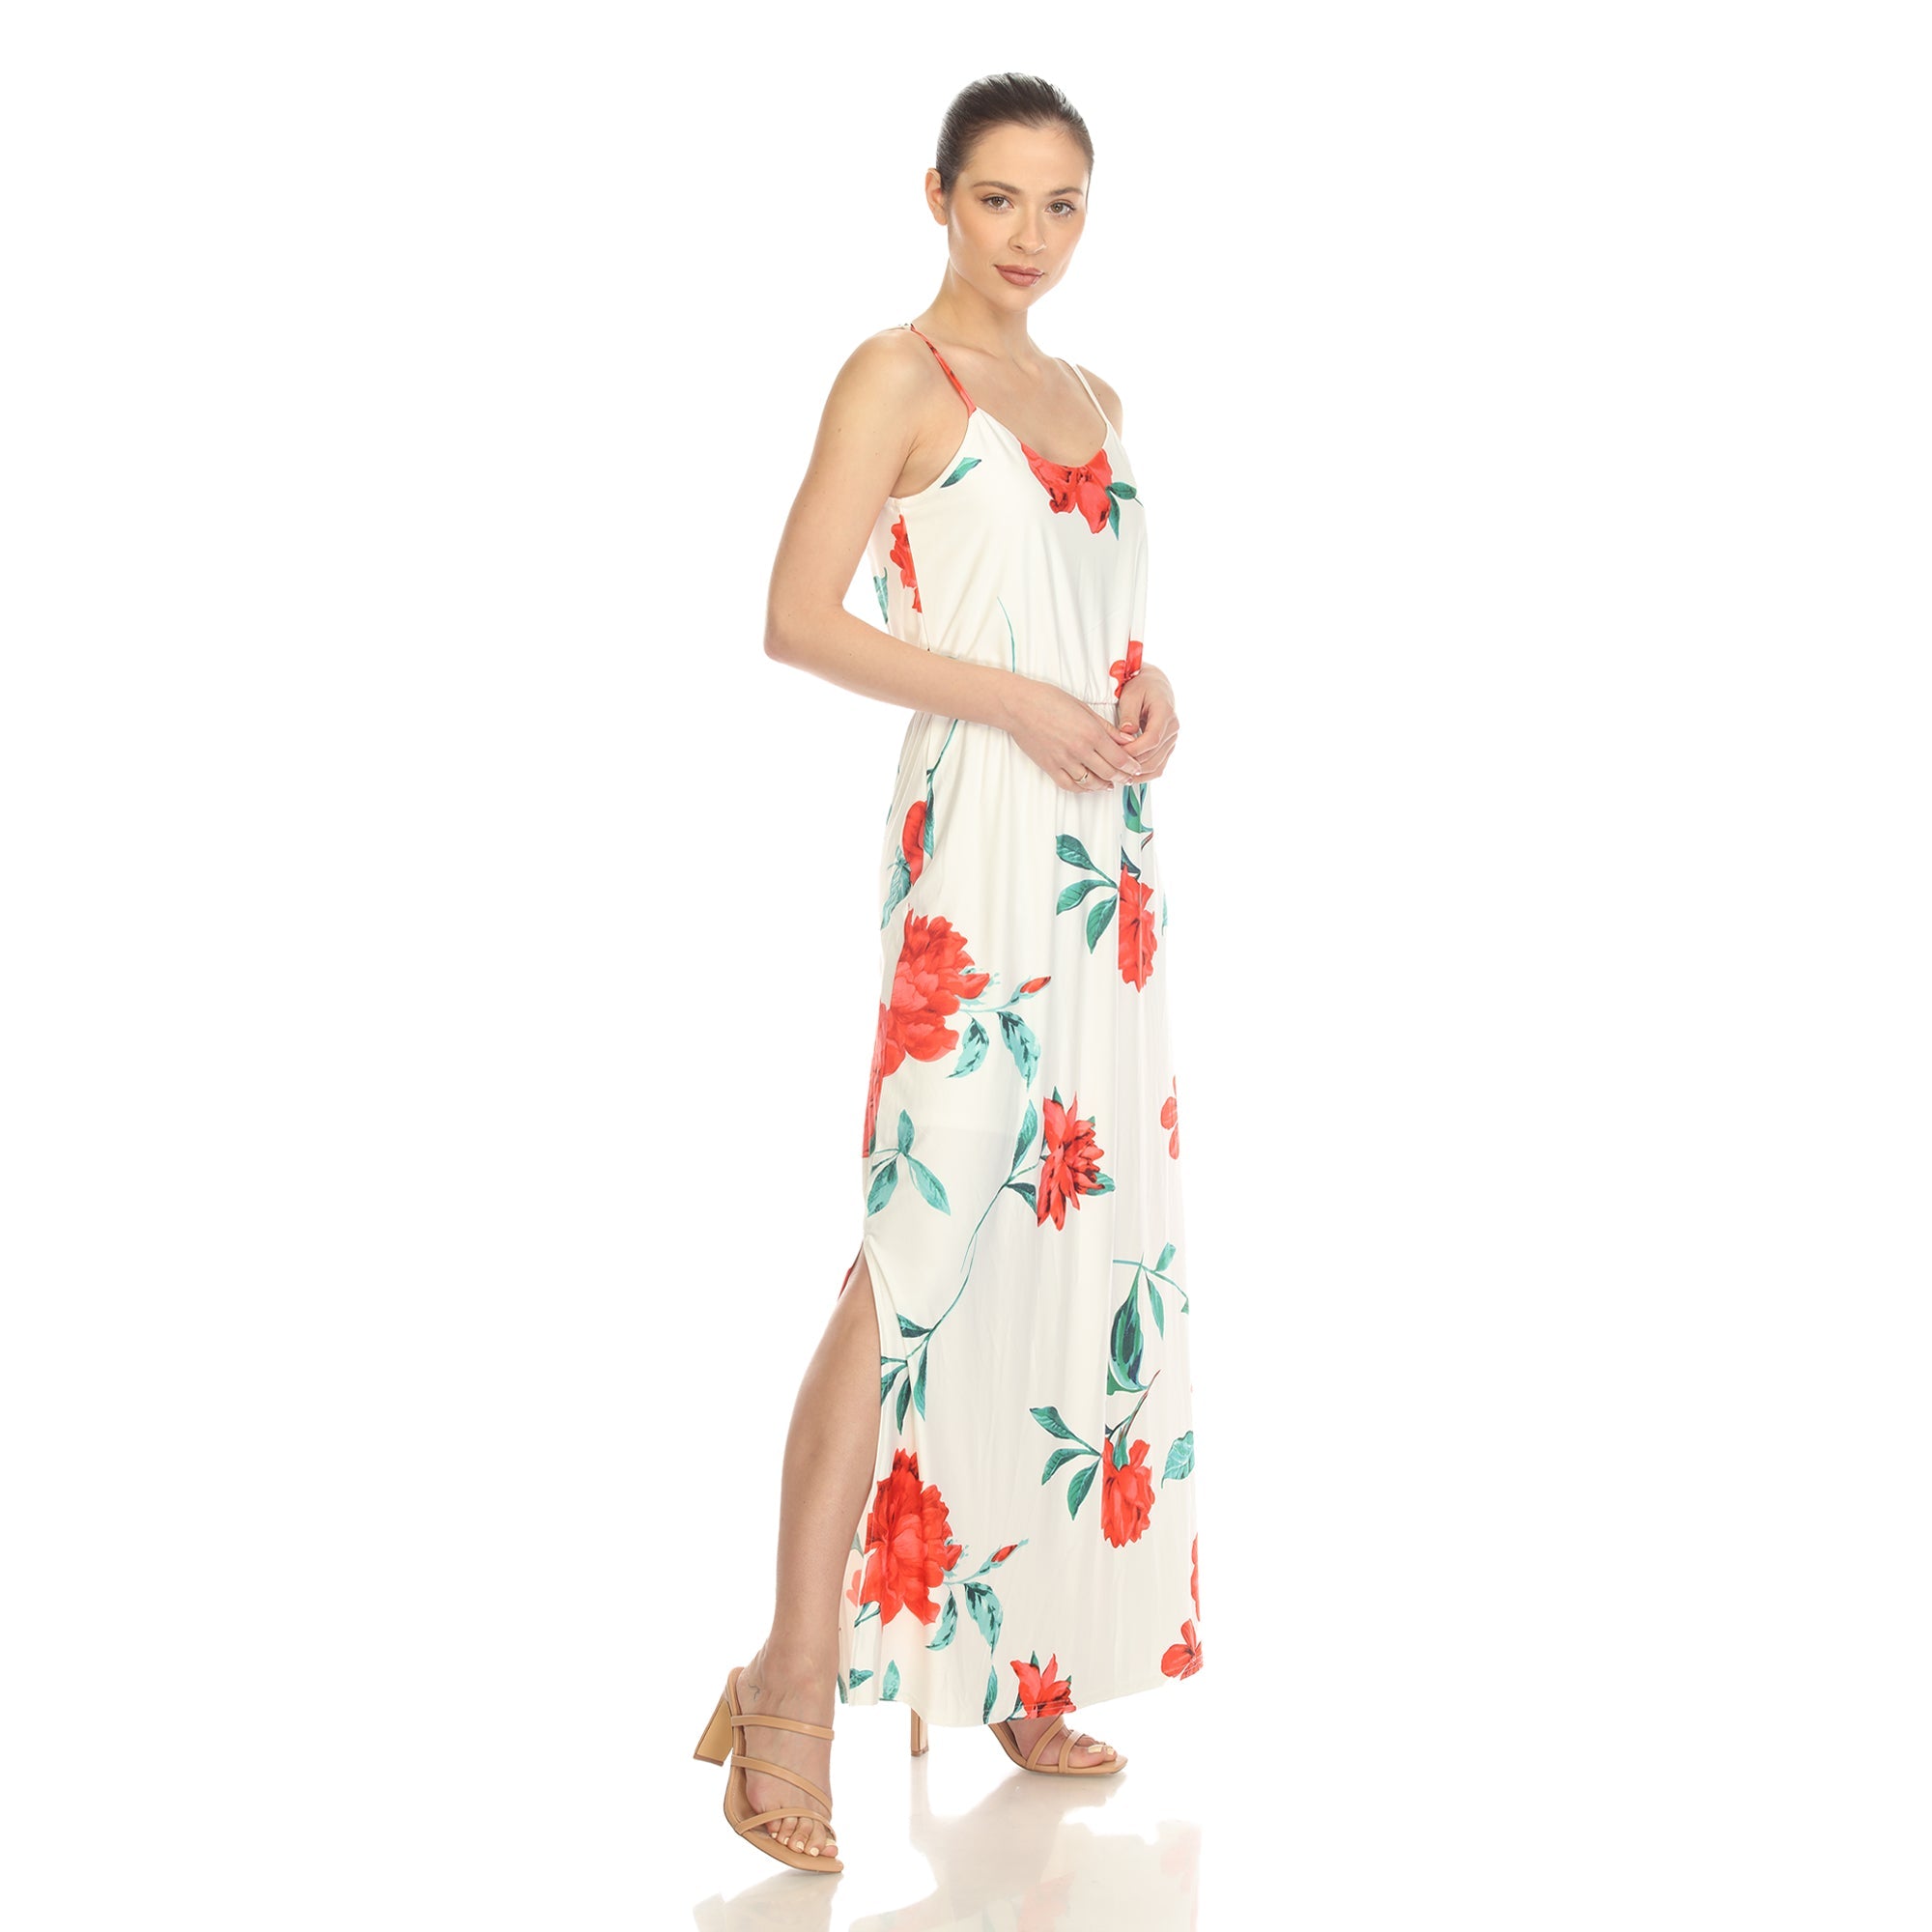 Floral Strap Maxi Dress - DressbarnDresses